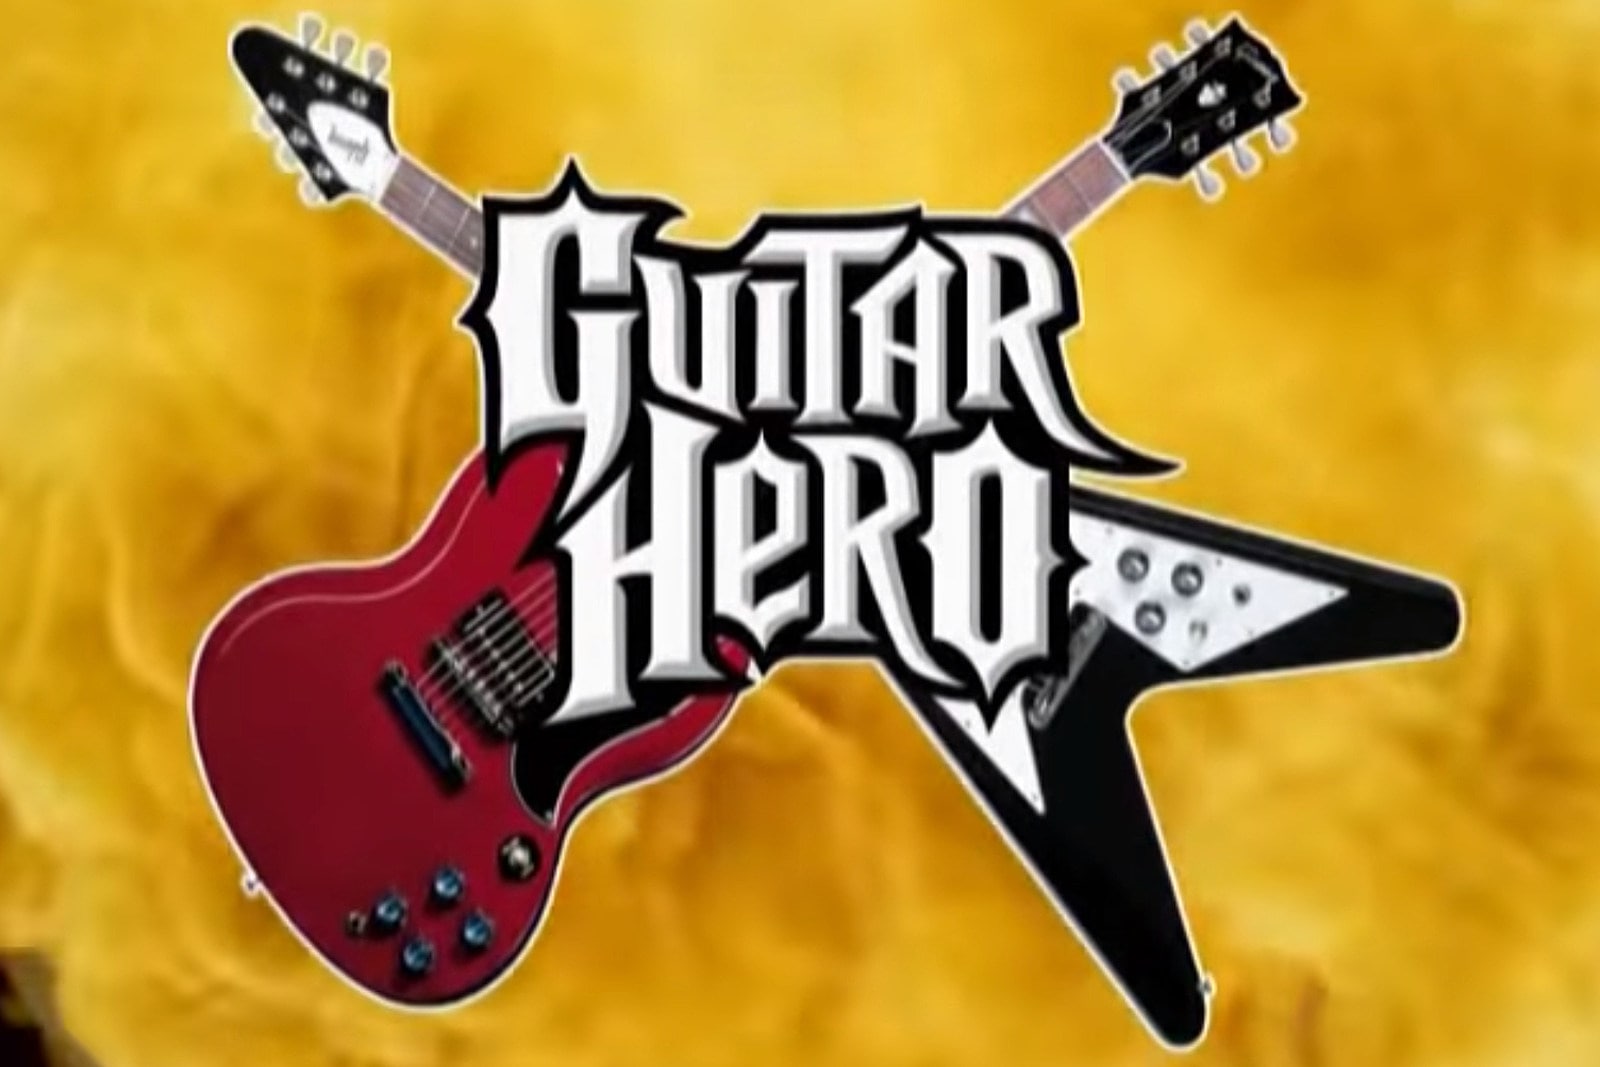 Guitar Hero, Game Musik Terpopuler Hingga Saat Ini